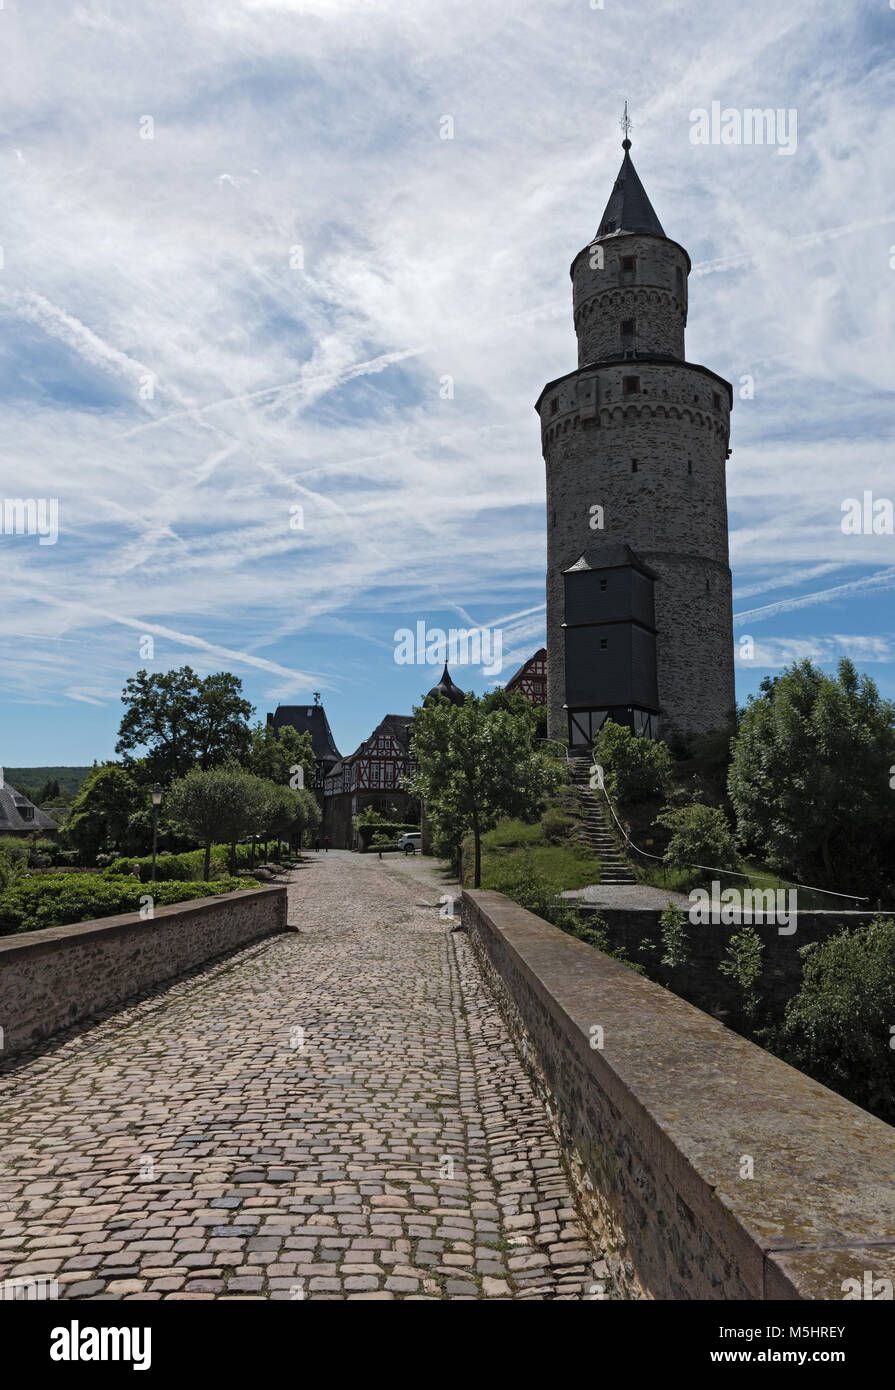 Das Renaissance-schloss mit einer Hexe Turm Idstein, Deutschland Stockfoto